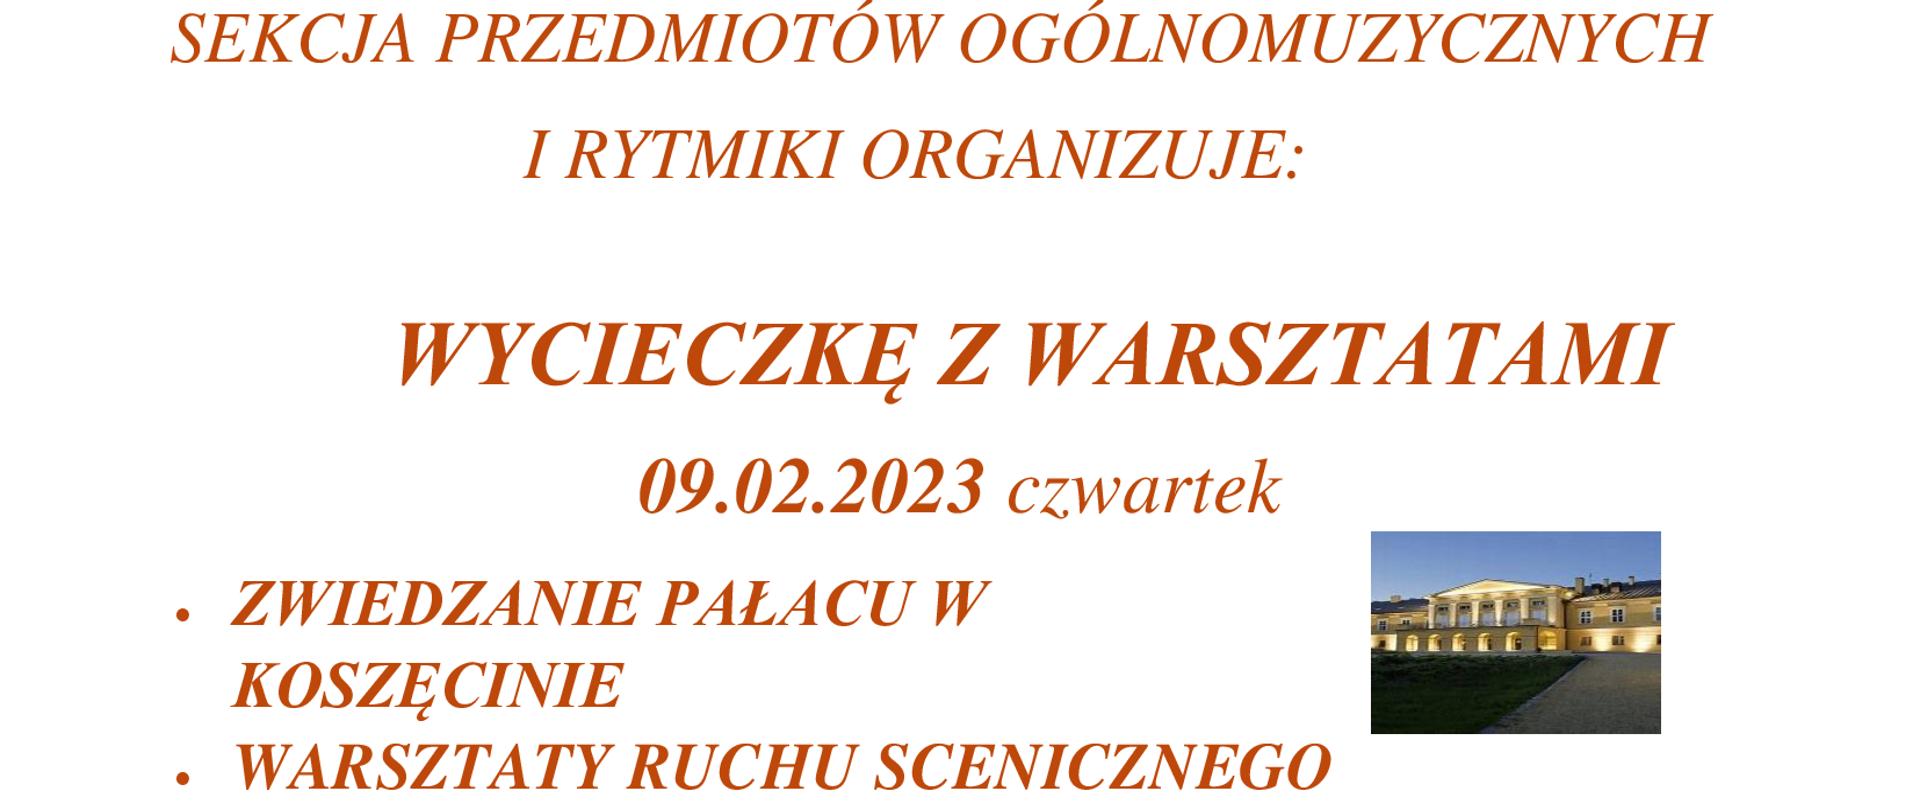 plakat na białym tle pomarańczowe napisy z nazwą terminem i programem wycieczki ozdobione zdjęciem siedziby zespołu Śląsk, trzema zdjęciami z występu oraz logo zawierającego nazwę i wpisaną w kwadrat parę taneczną